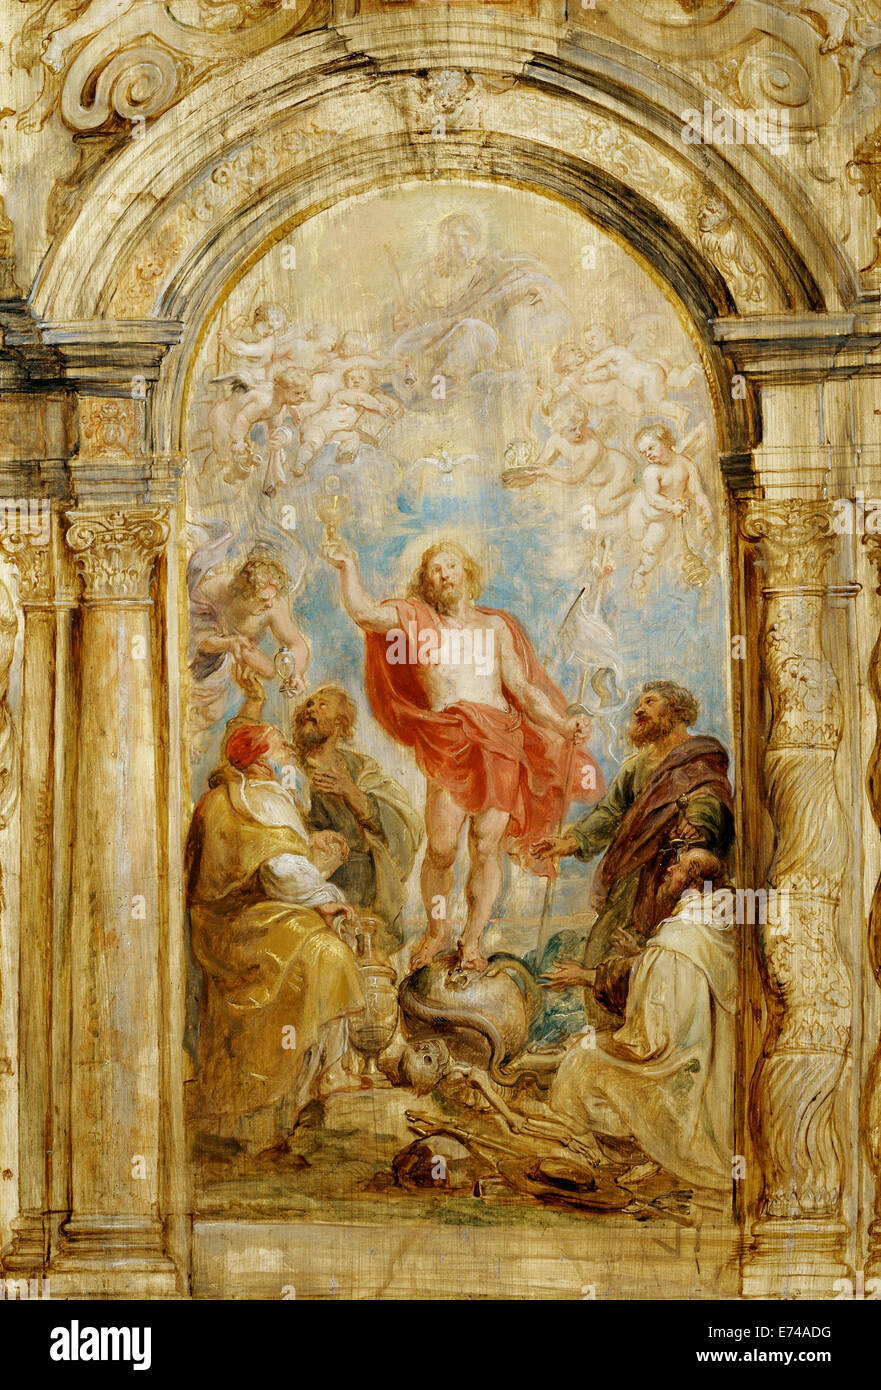 La glorification de l'Eucharistie - par Peter Paul Rubens, 1632 Banque D'Images